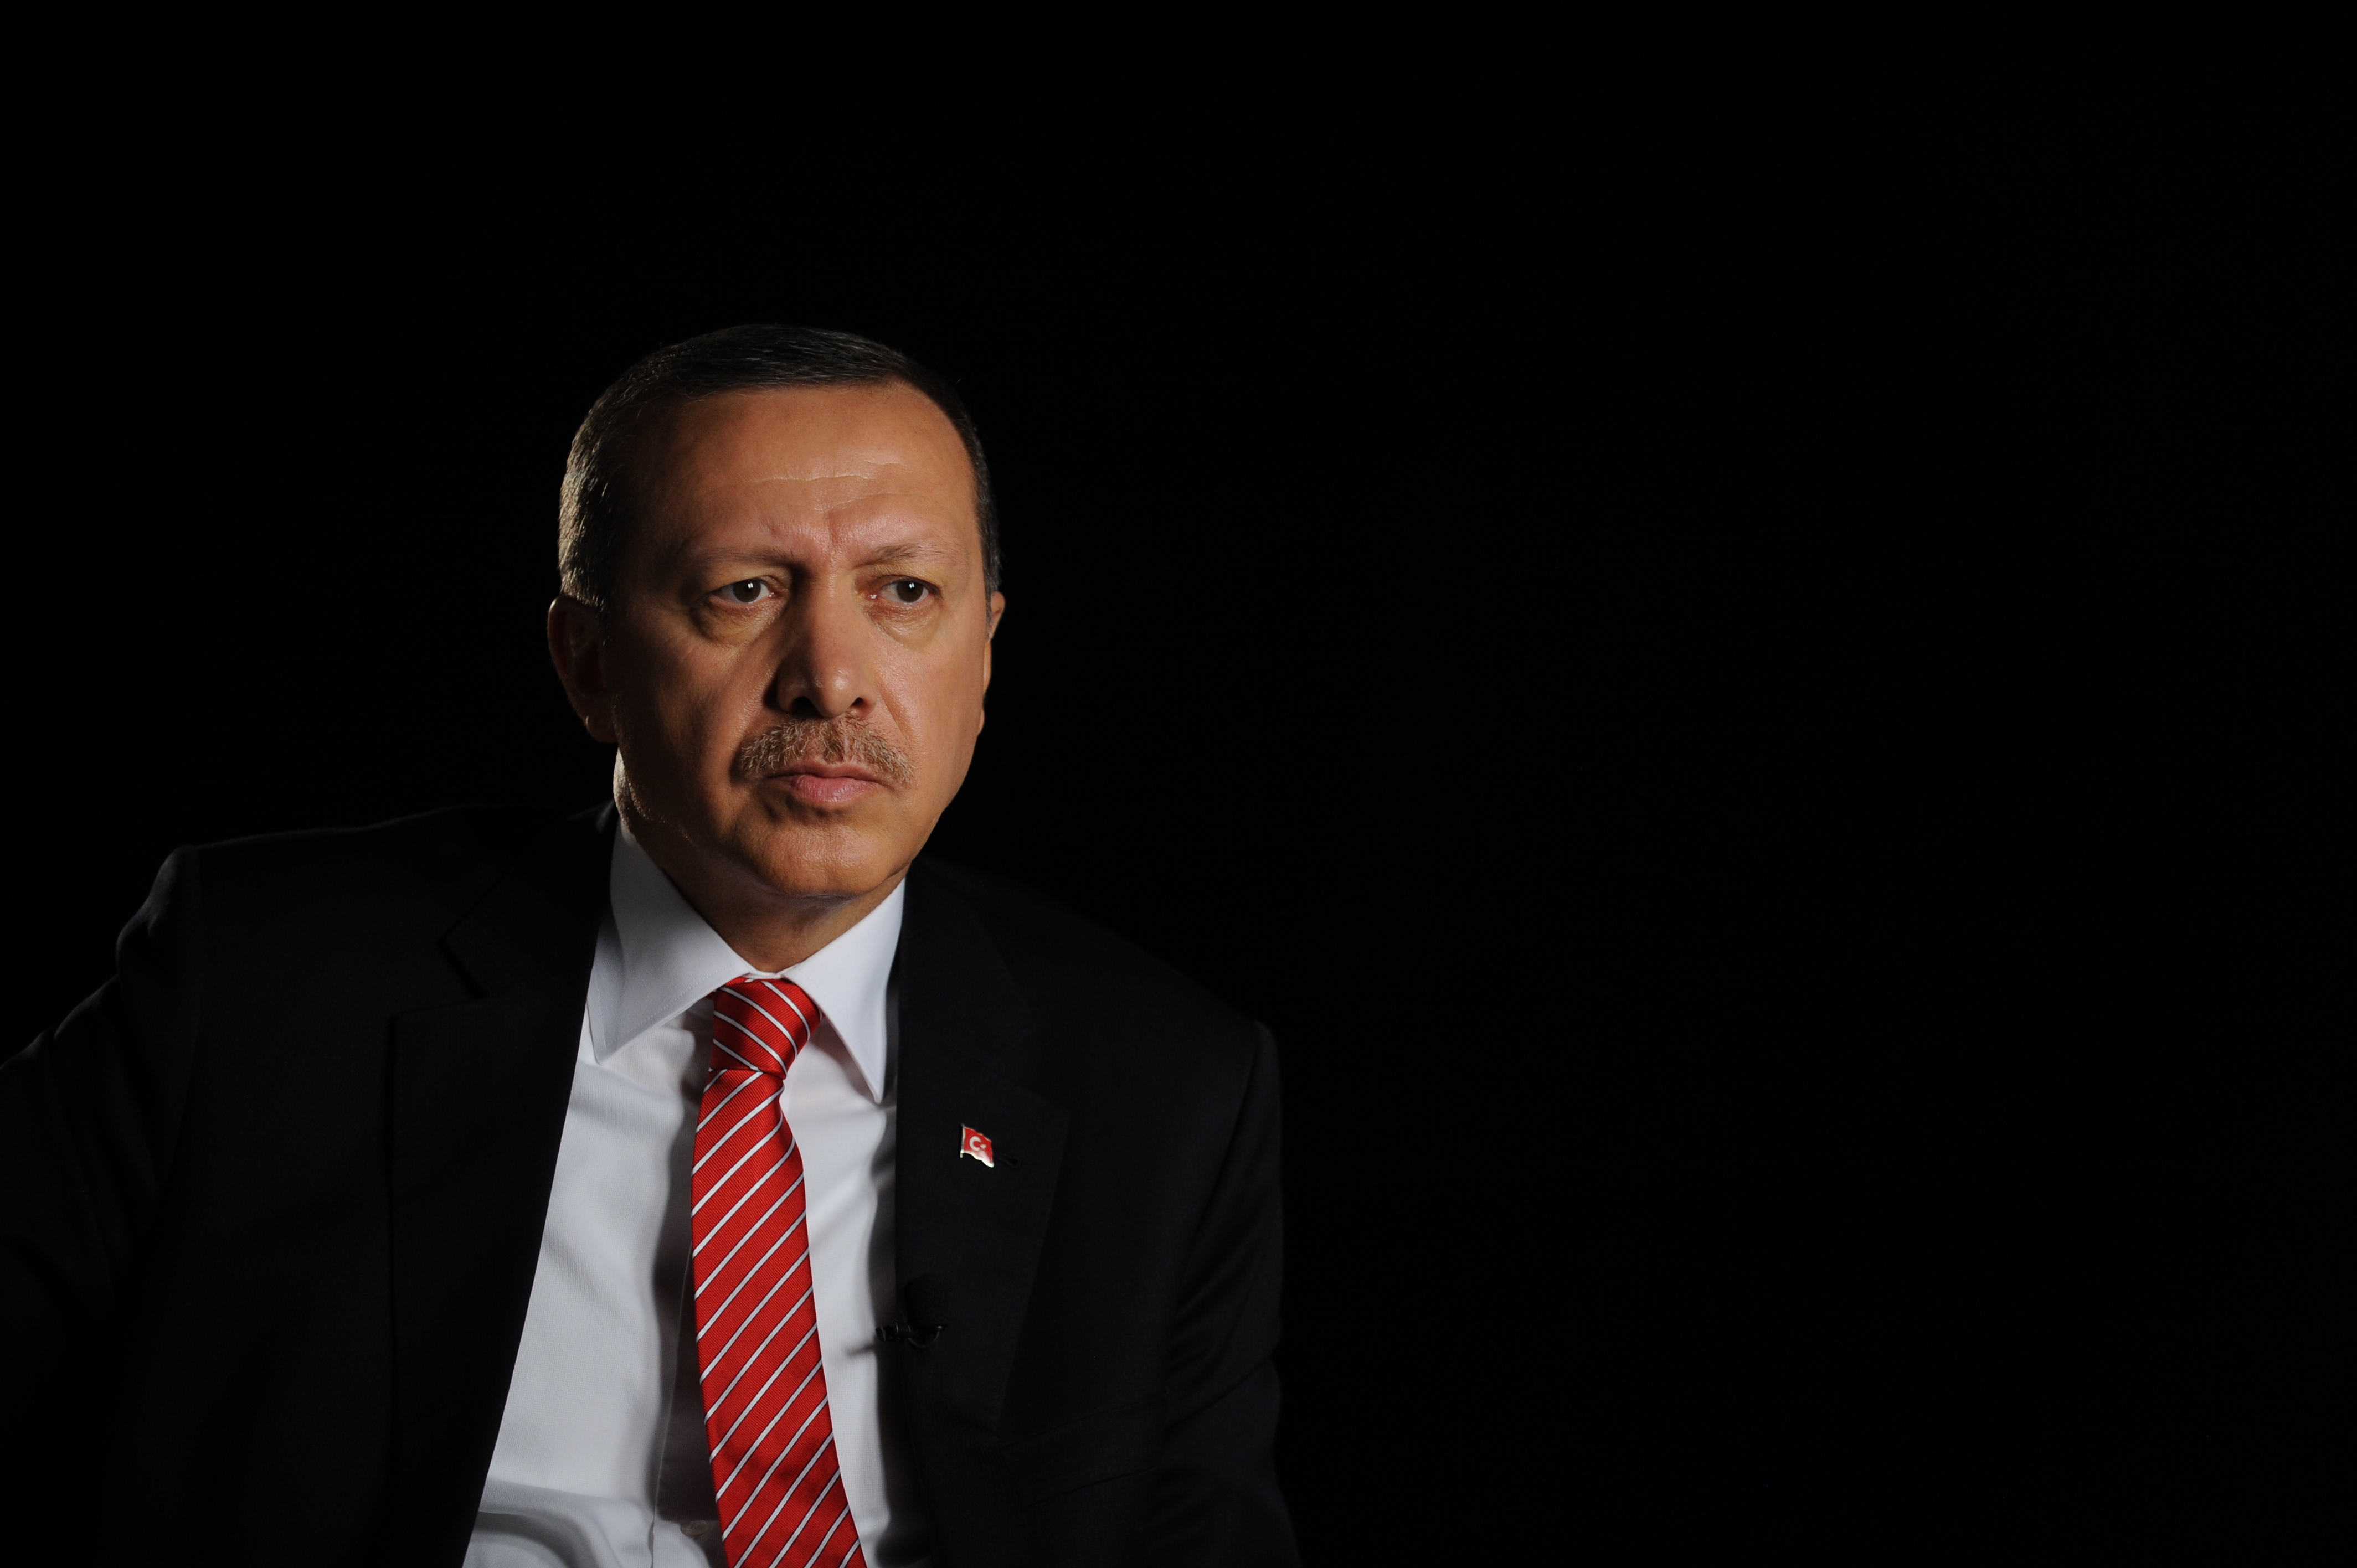 Helvayı değil ayvayı yiyecekler! Cumhurbaşkanı Erdoğan'a çirkin paylaşımlar için soruşturma başlatıldı!